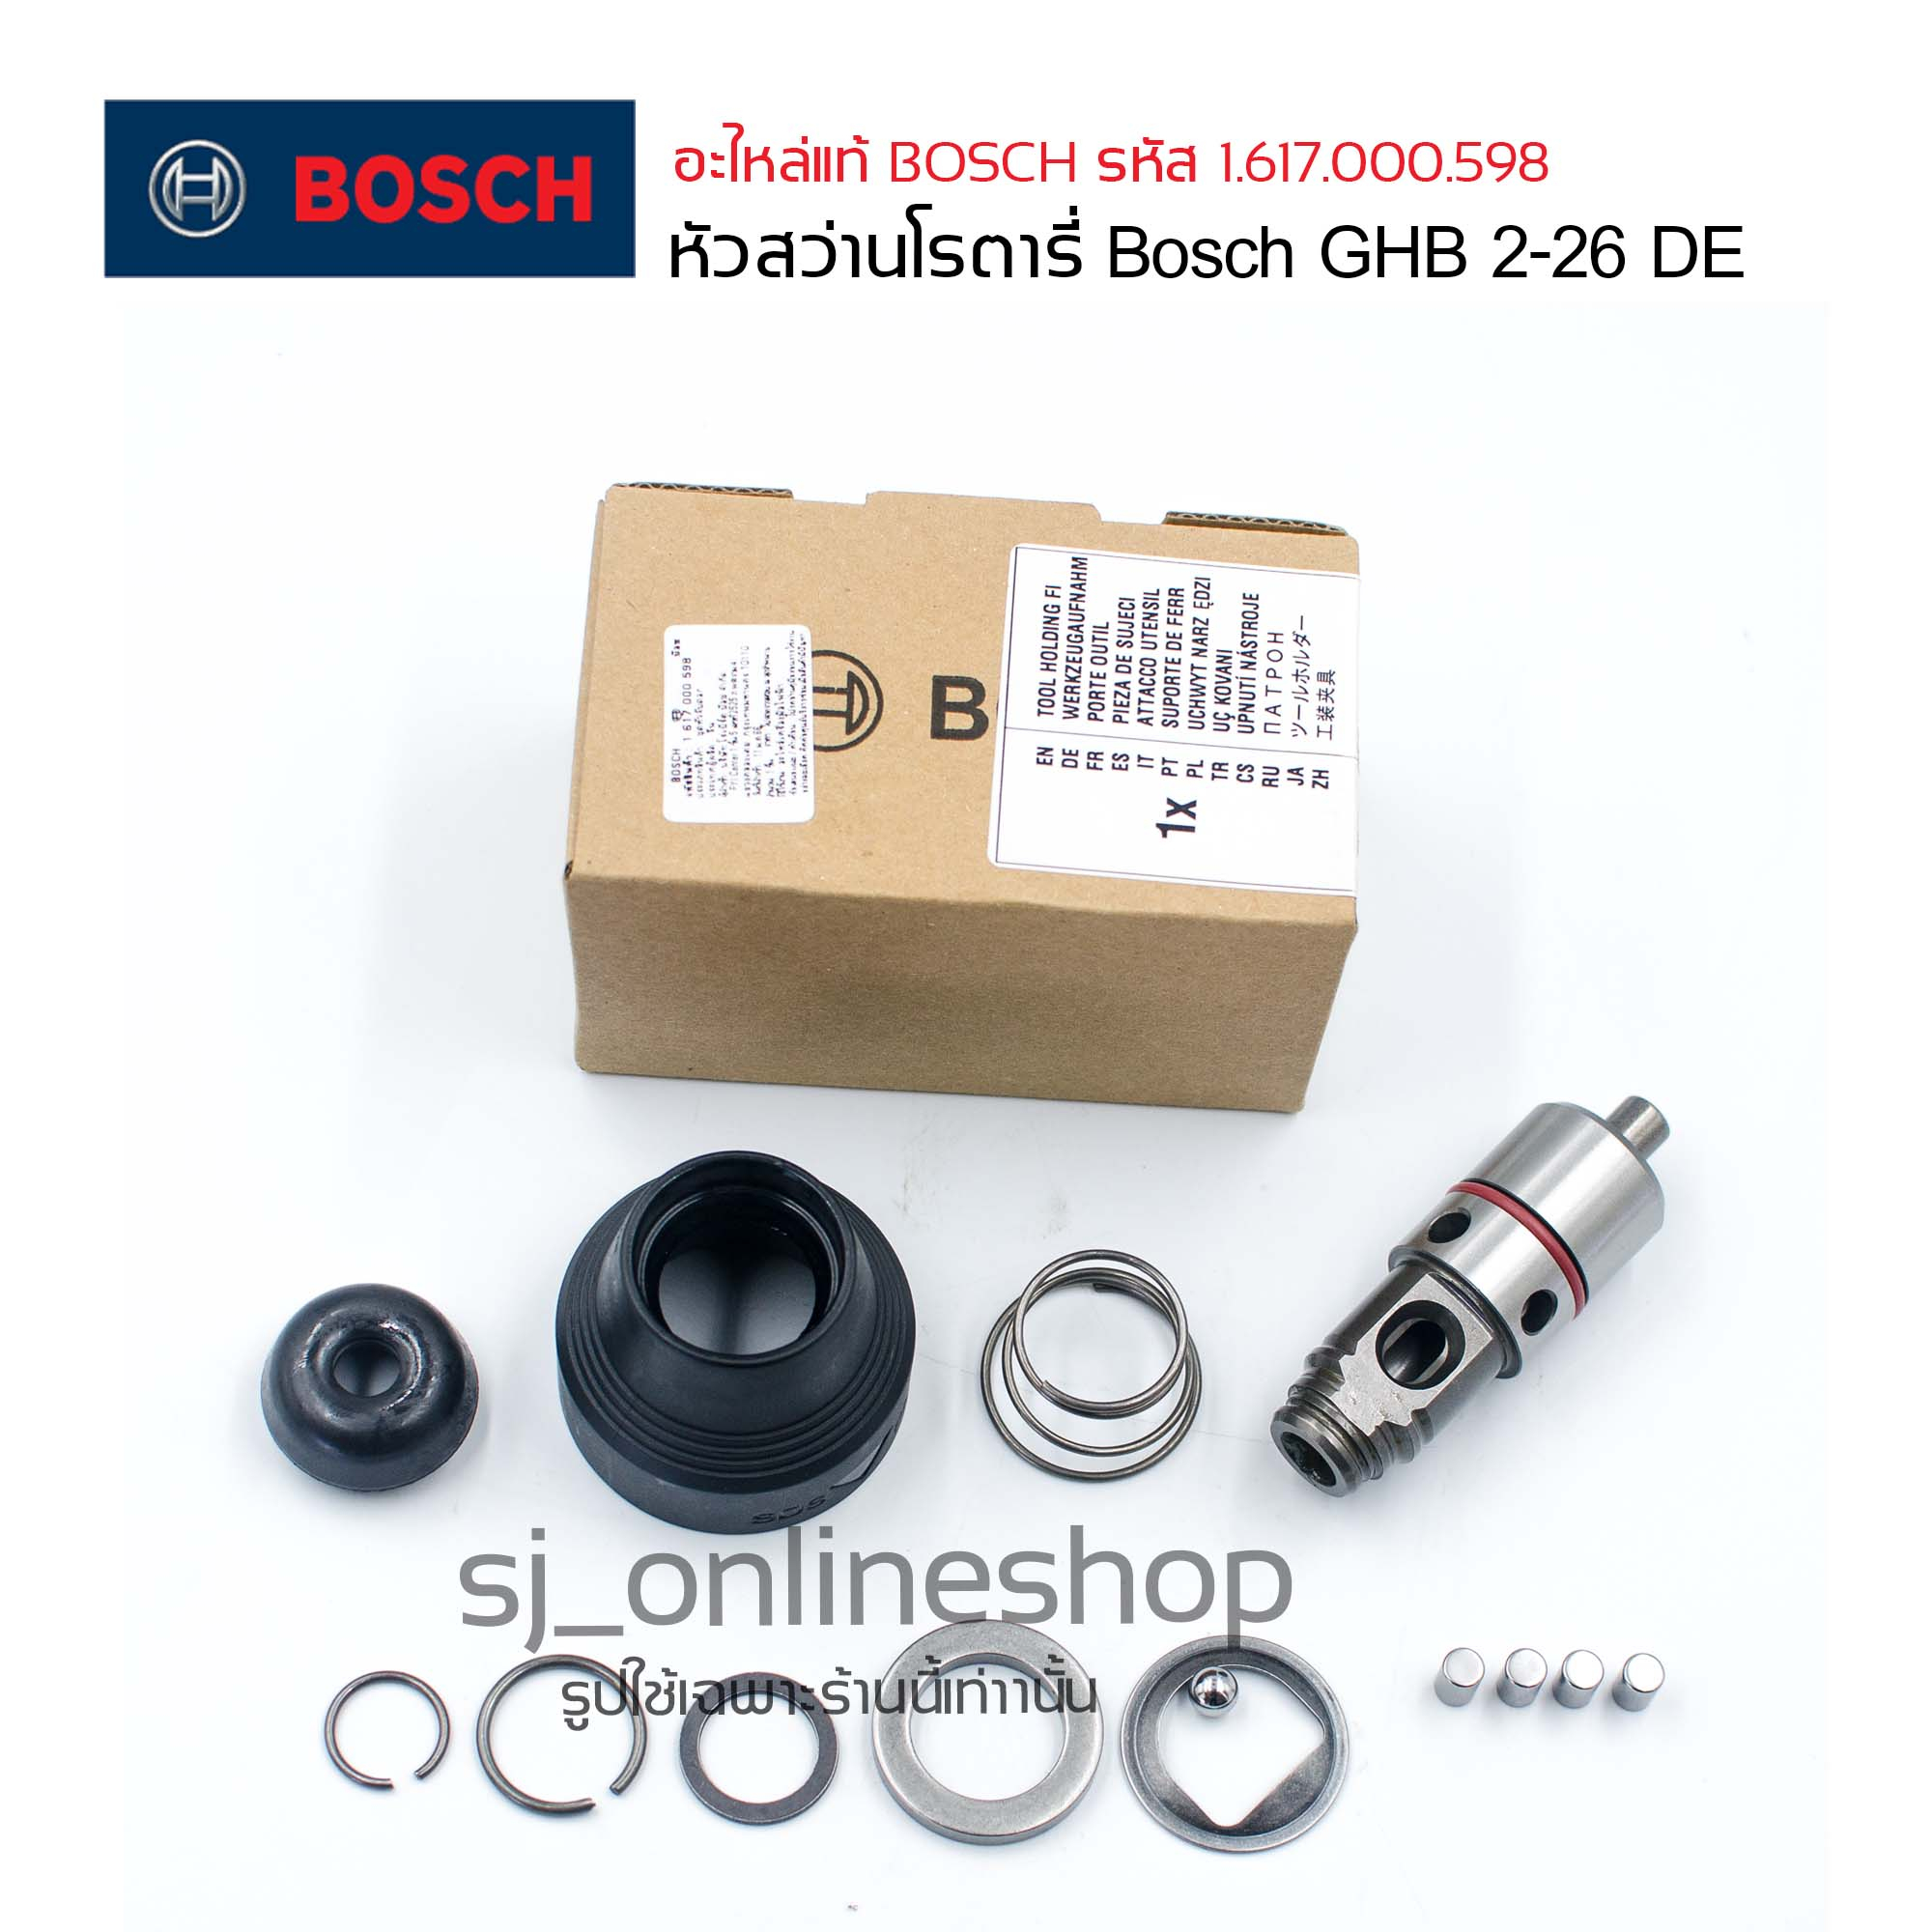 อะไหล่แท้ หัวสว่านโรตารี่ Bosch หัวจับดอกสว่าน Bosch รุ่น GHB 2-26 DE ชุดจับยึดดอกสว่านสำหรับสว่านโรตารี่ Bosch